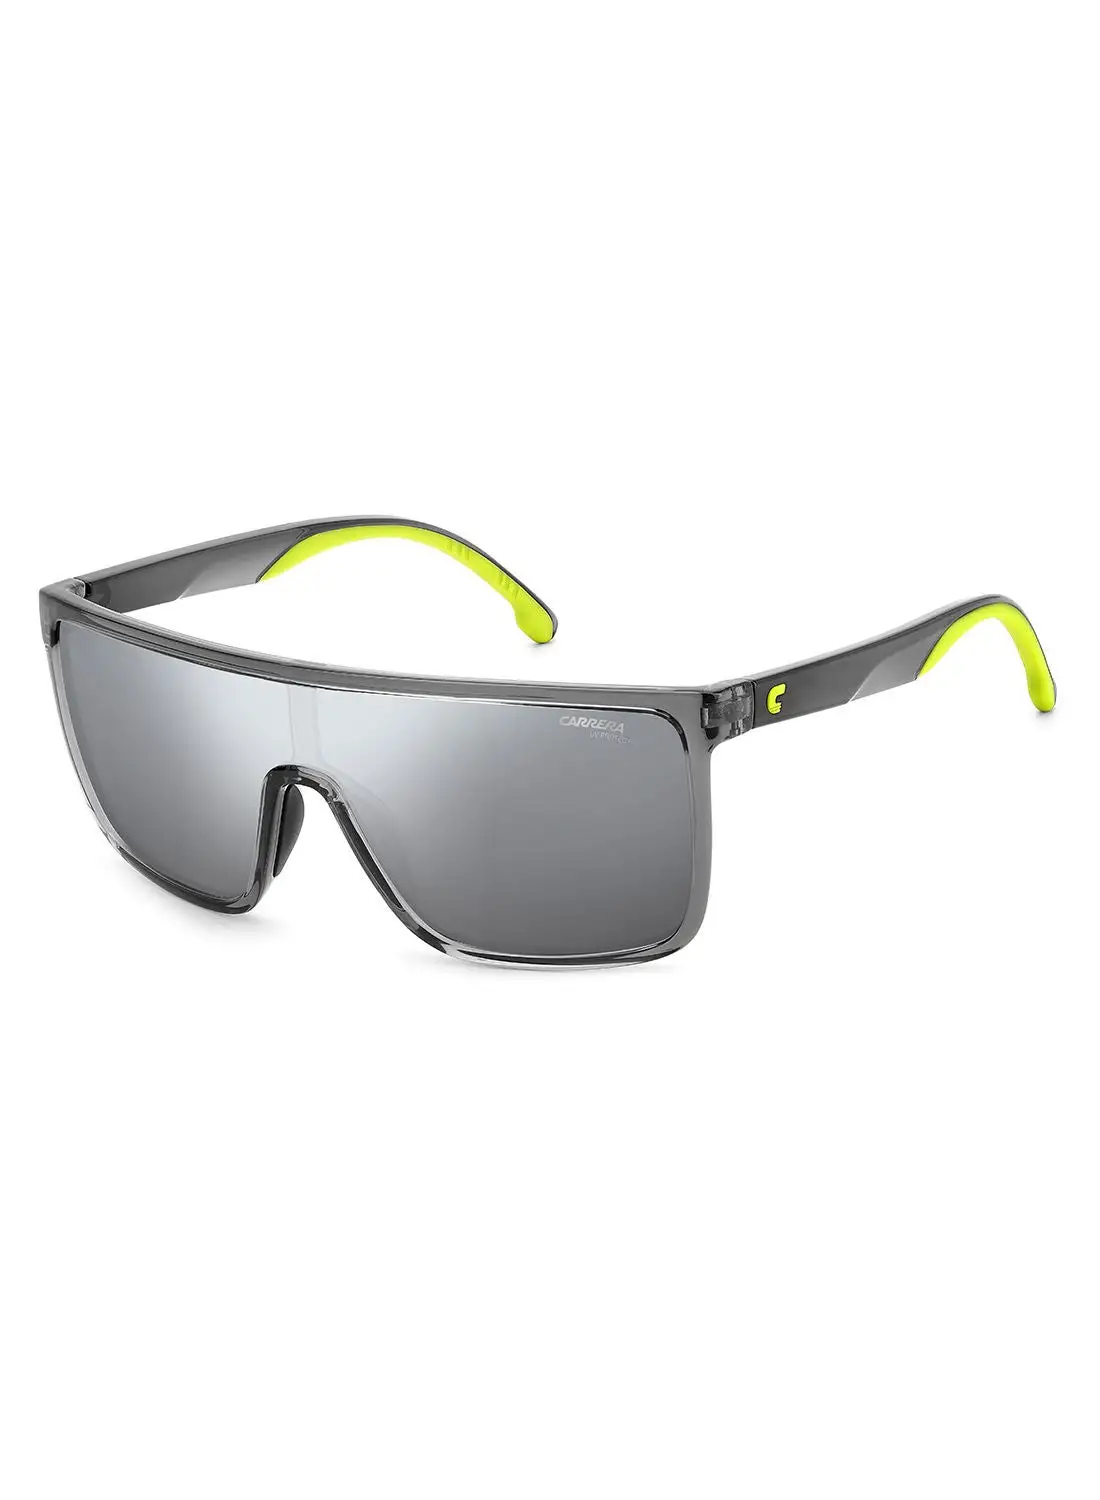 نظارات كاريرا للجنسين للحماية من الأشعة فوق البنفسجية - Carrera 8060/S رمادي/أخضر 99 - مقاس العدسة: 99 ملم